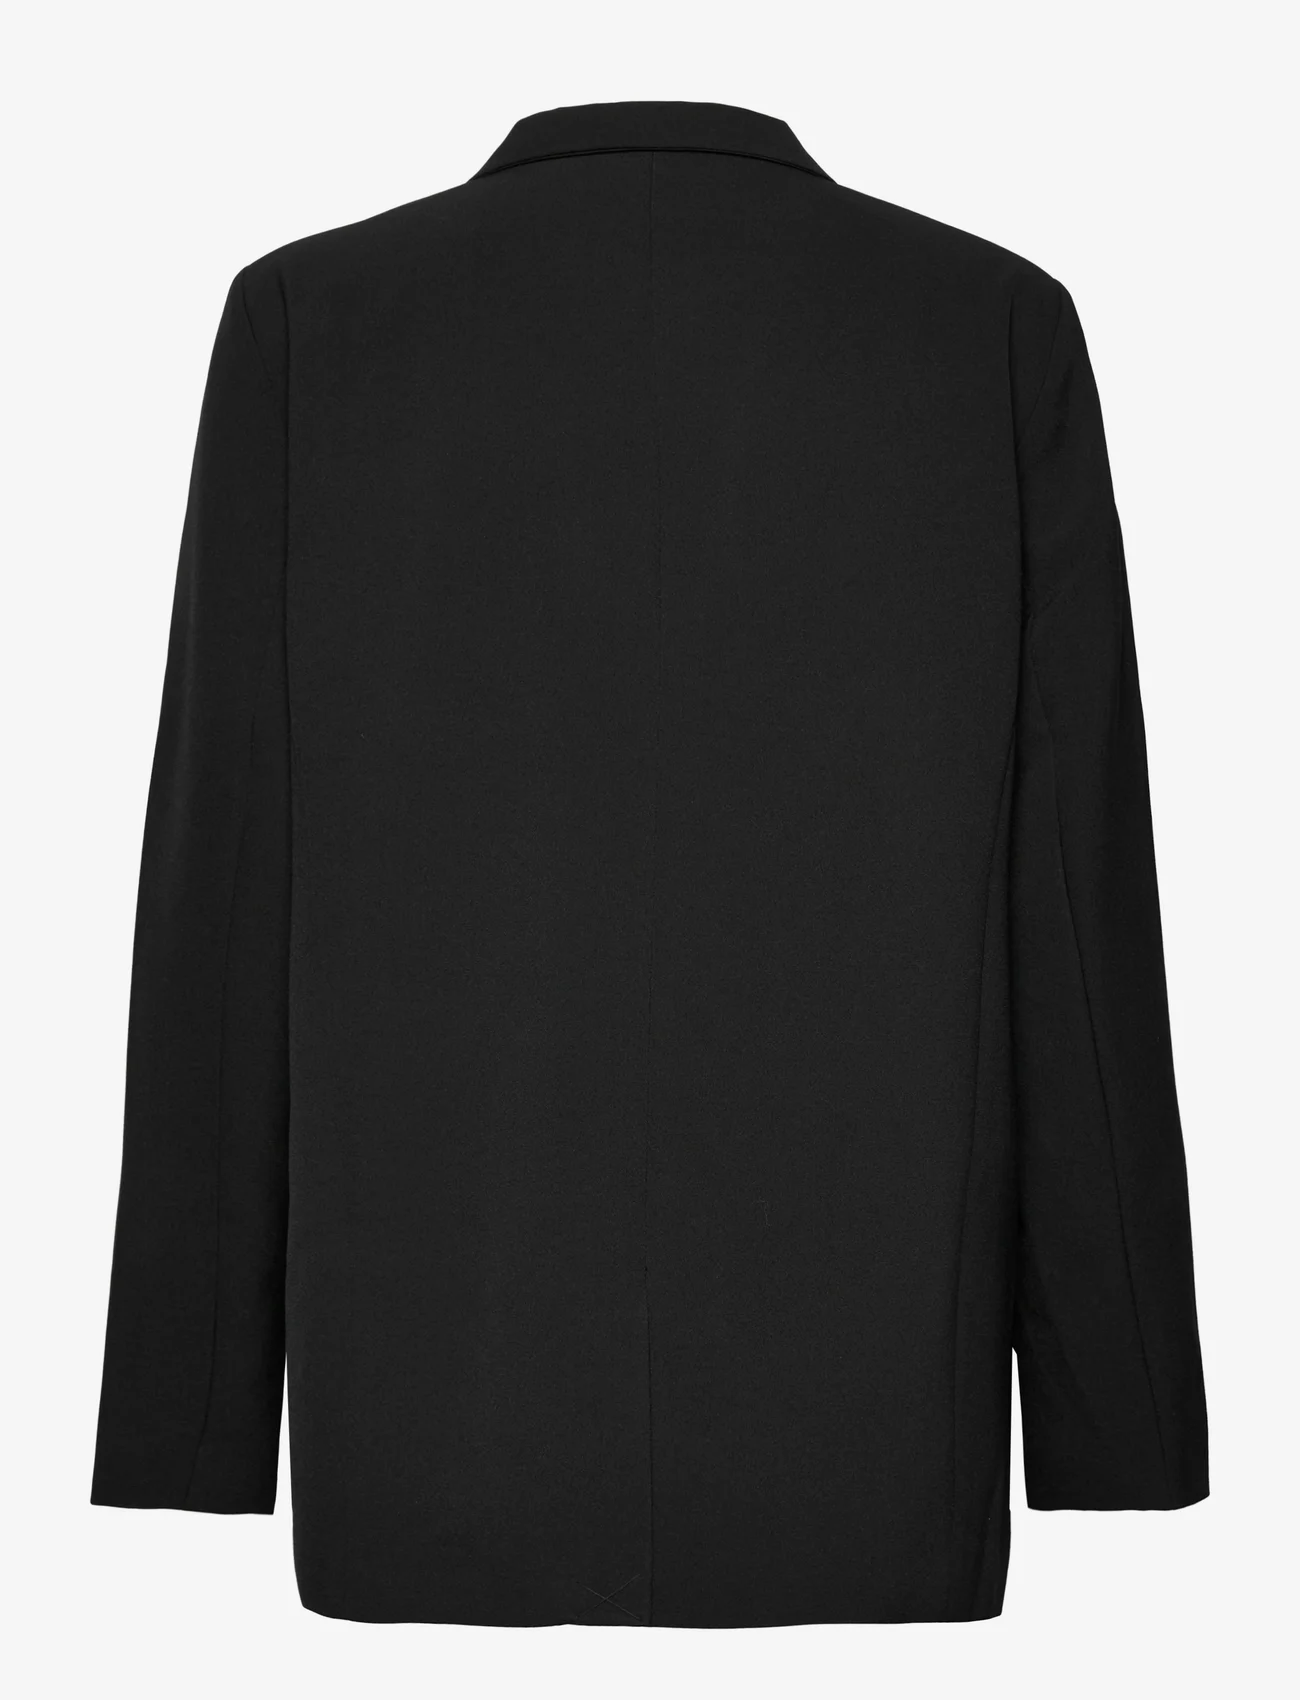 My Essential Wardrobe - 27 THE TAILORED BLAZER - vakarėlių drabužiai išparduotuvių kainomis - black - 1